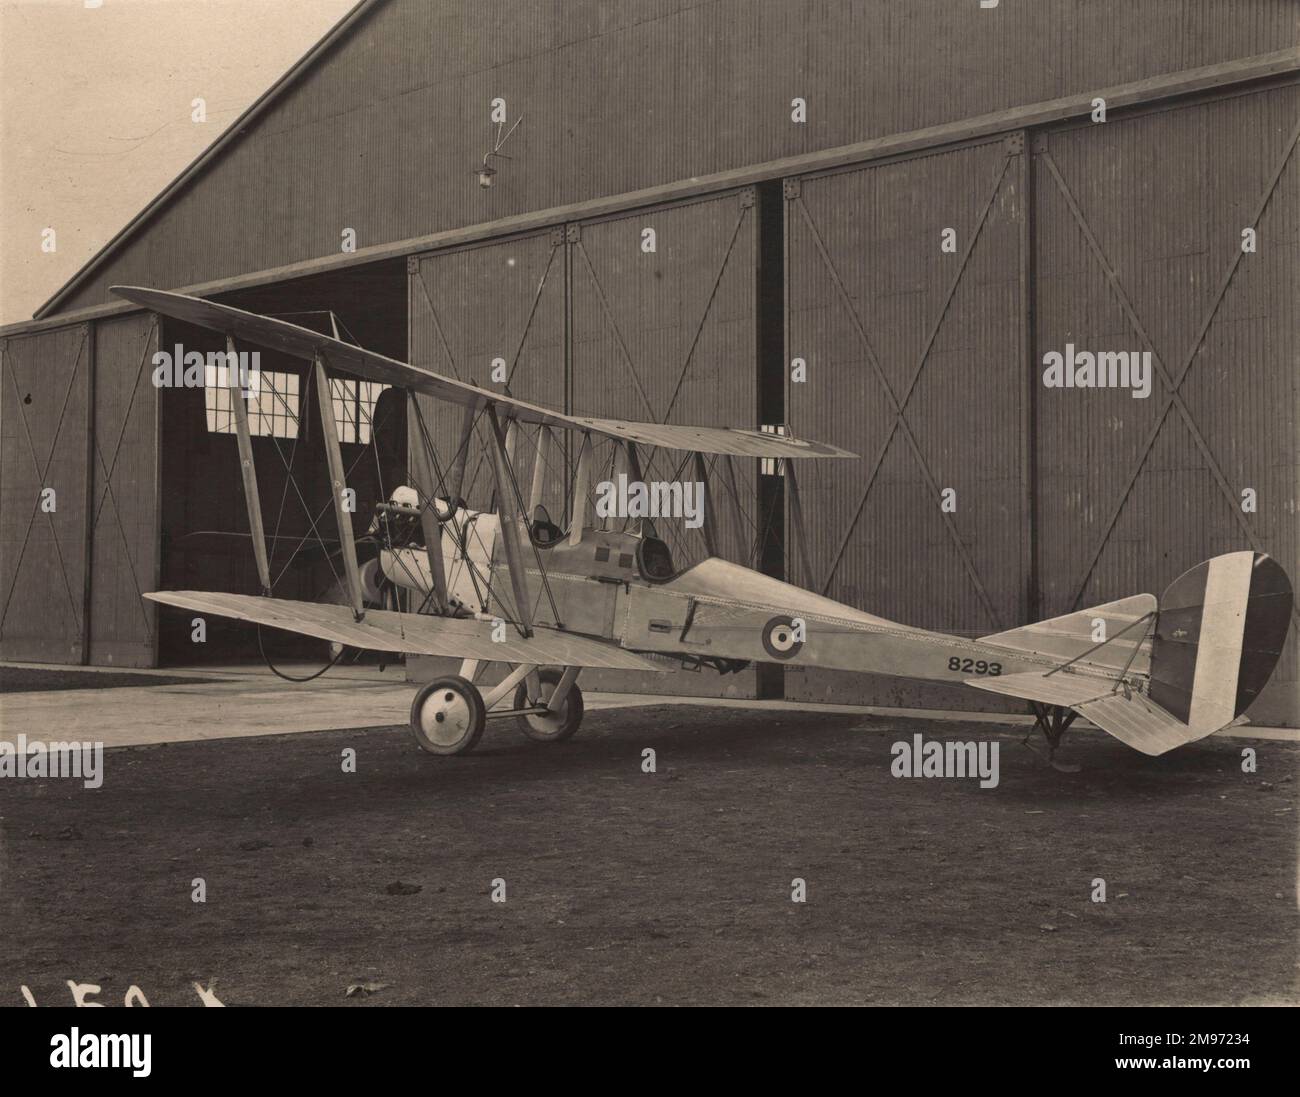 A Grahame-White Aviation fabriqué en BE2c, 8293. Banque D'Images